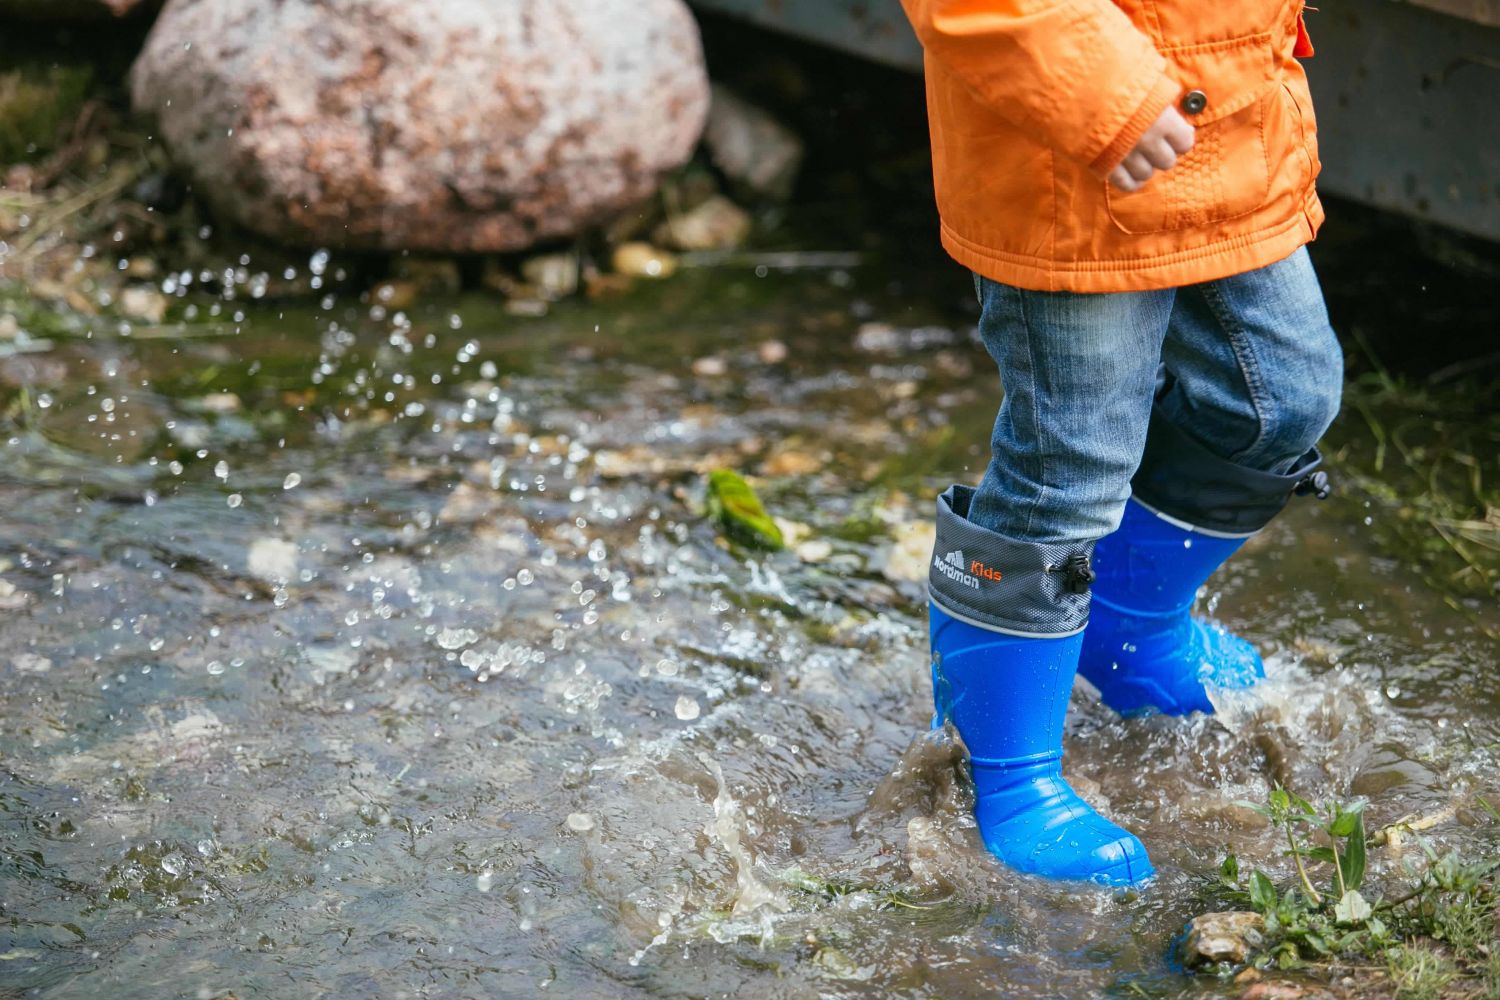 Как одеть и обуть ребенка, чтобы он не промок в слякоть? - блог Диномама.ру